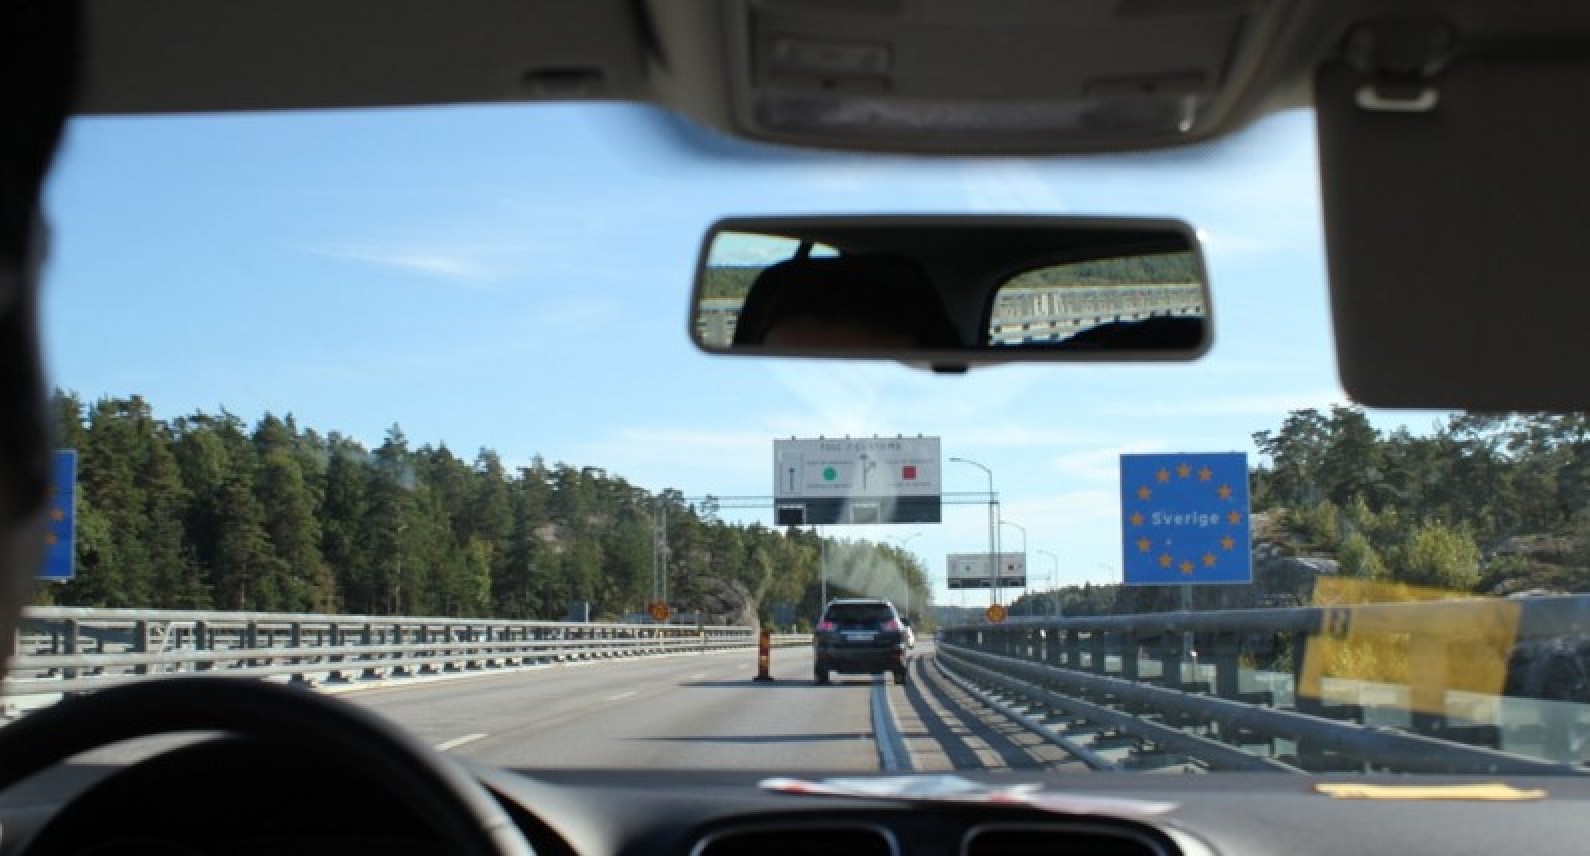 Powrót do domu na święta będzie utrudniony: Szwecja wprowadza wymóg posiadania certyfikatów covidowych